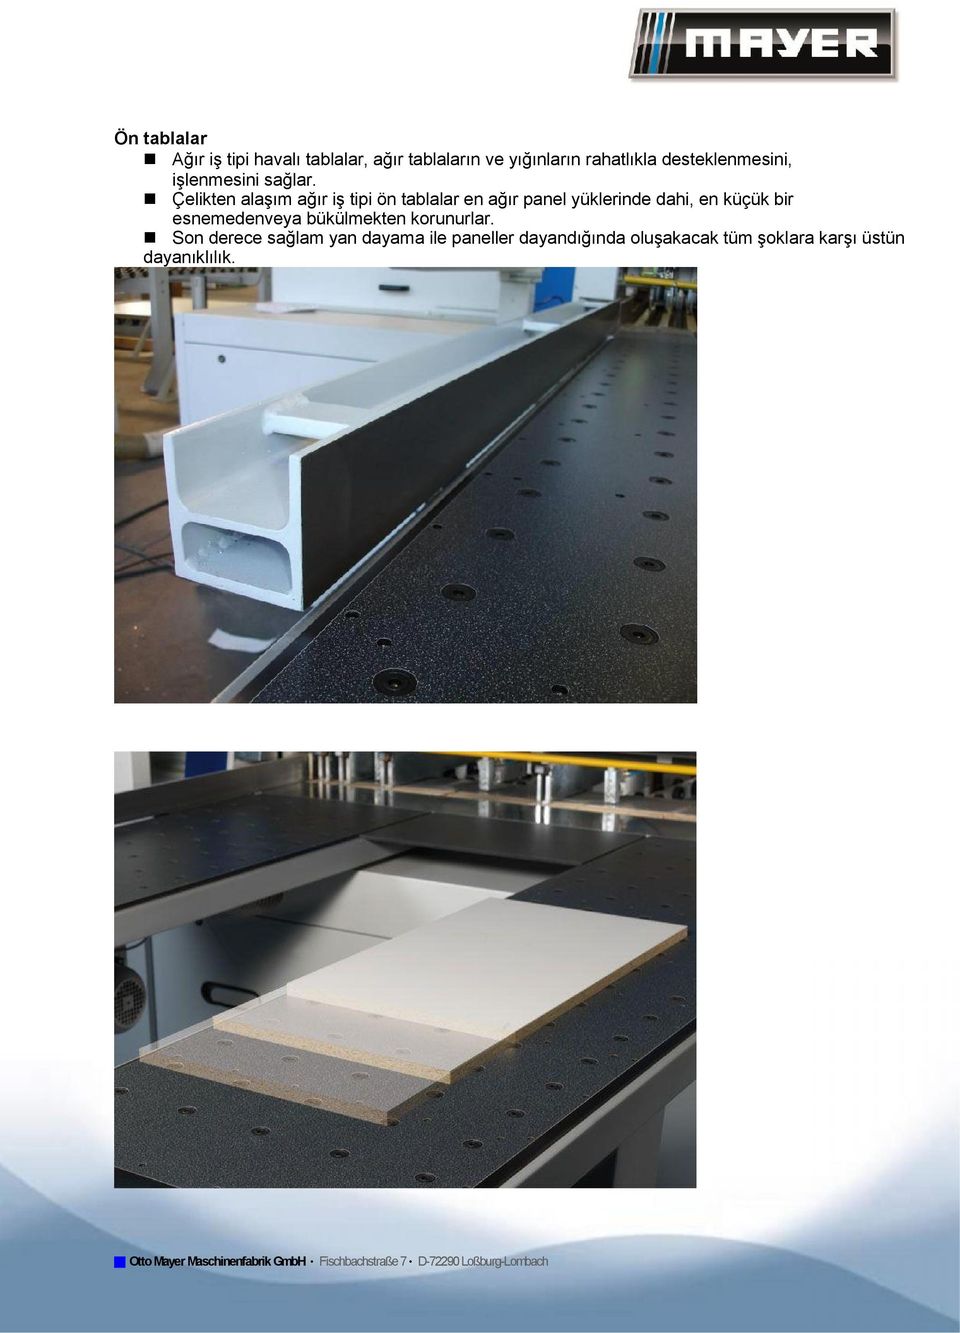 Çelikten alaşım ağır iş tipi ön tablalar en ağır panel yüklerinde dahi, en küçük bir esnemedenveya